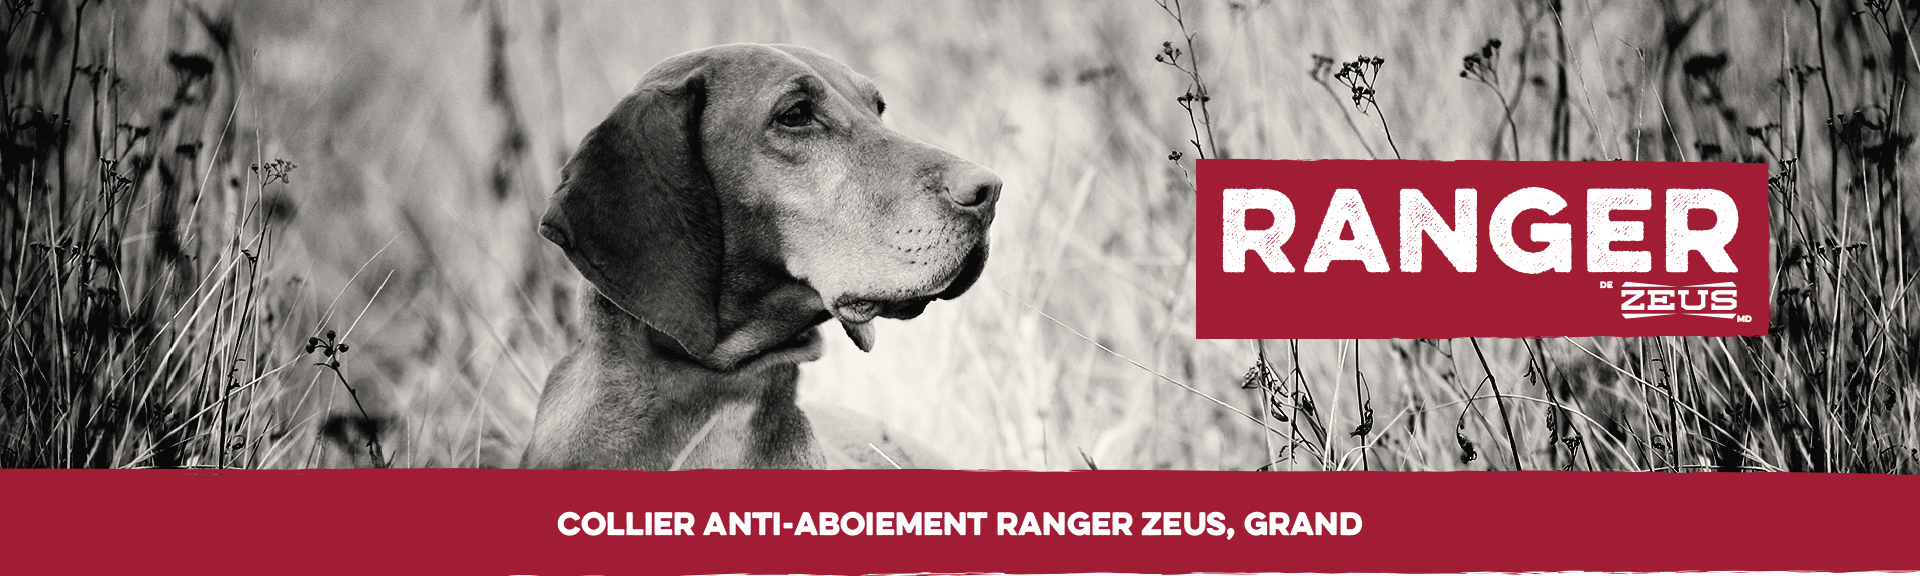 Le Collier anti-aboiement Ranger Zeus pour chiens de grande taille